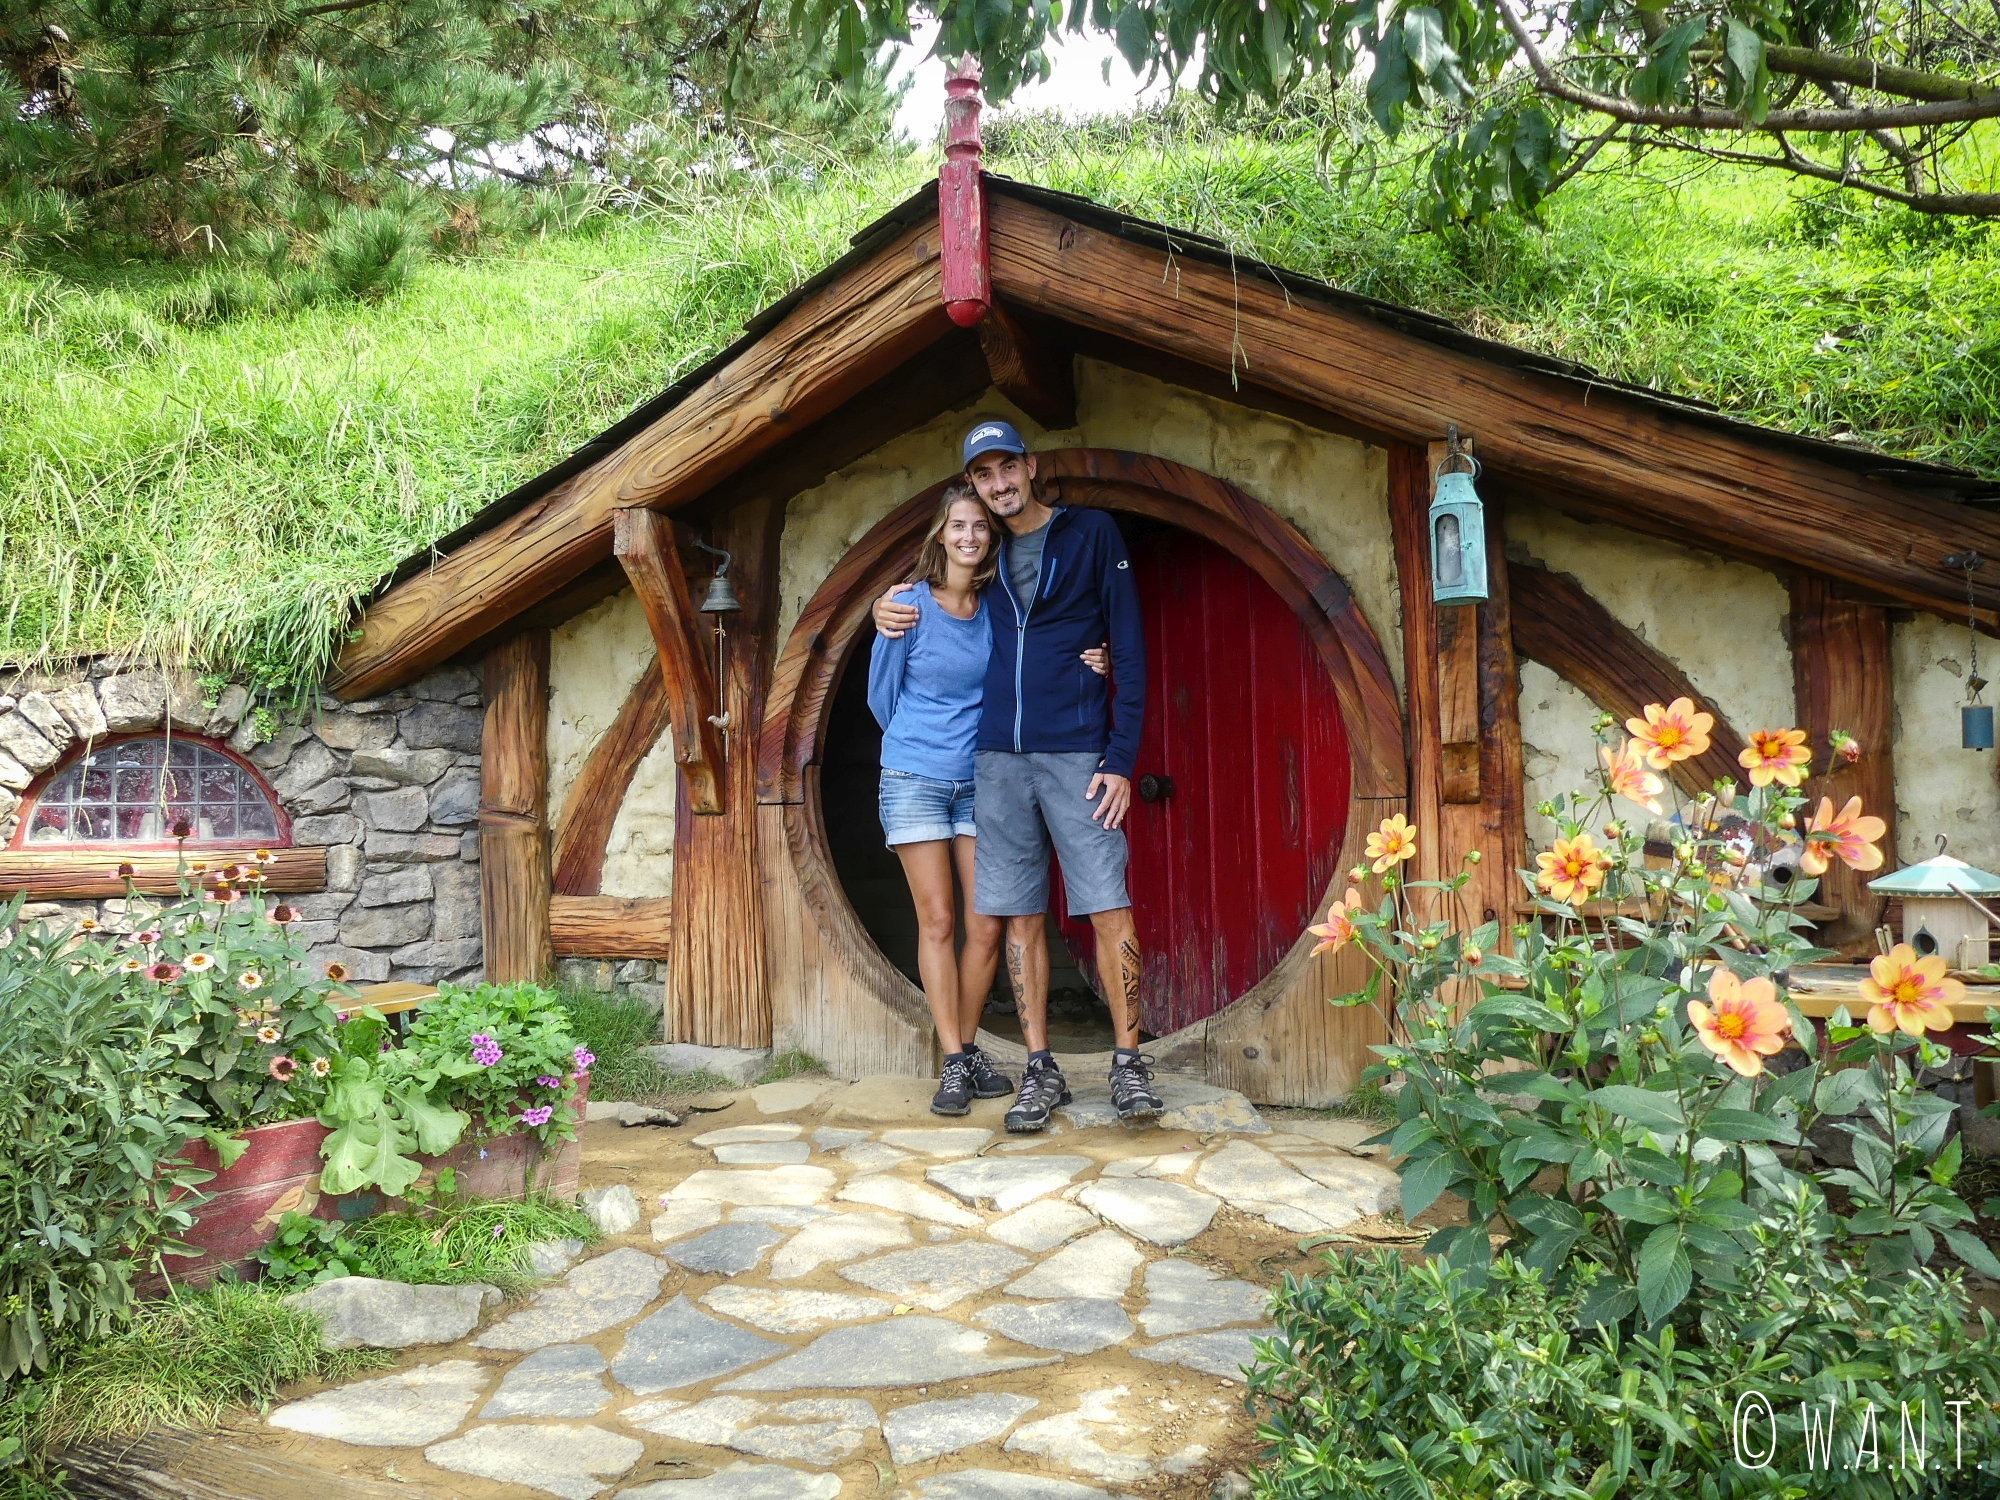 Nous nous serions bien installés dans cette petite maison à Hobbiton en Nouvelle-Zélande